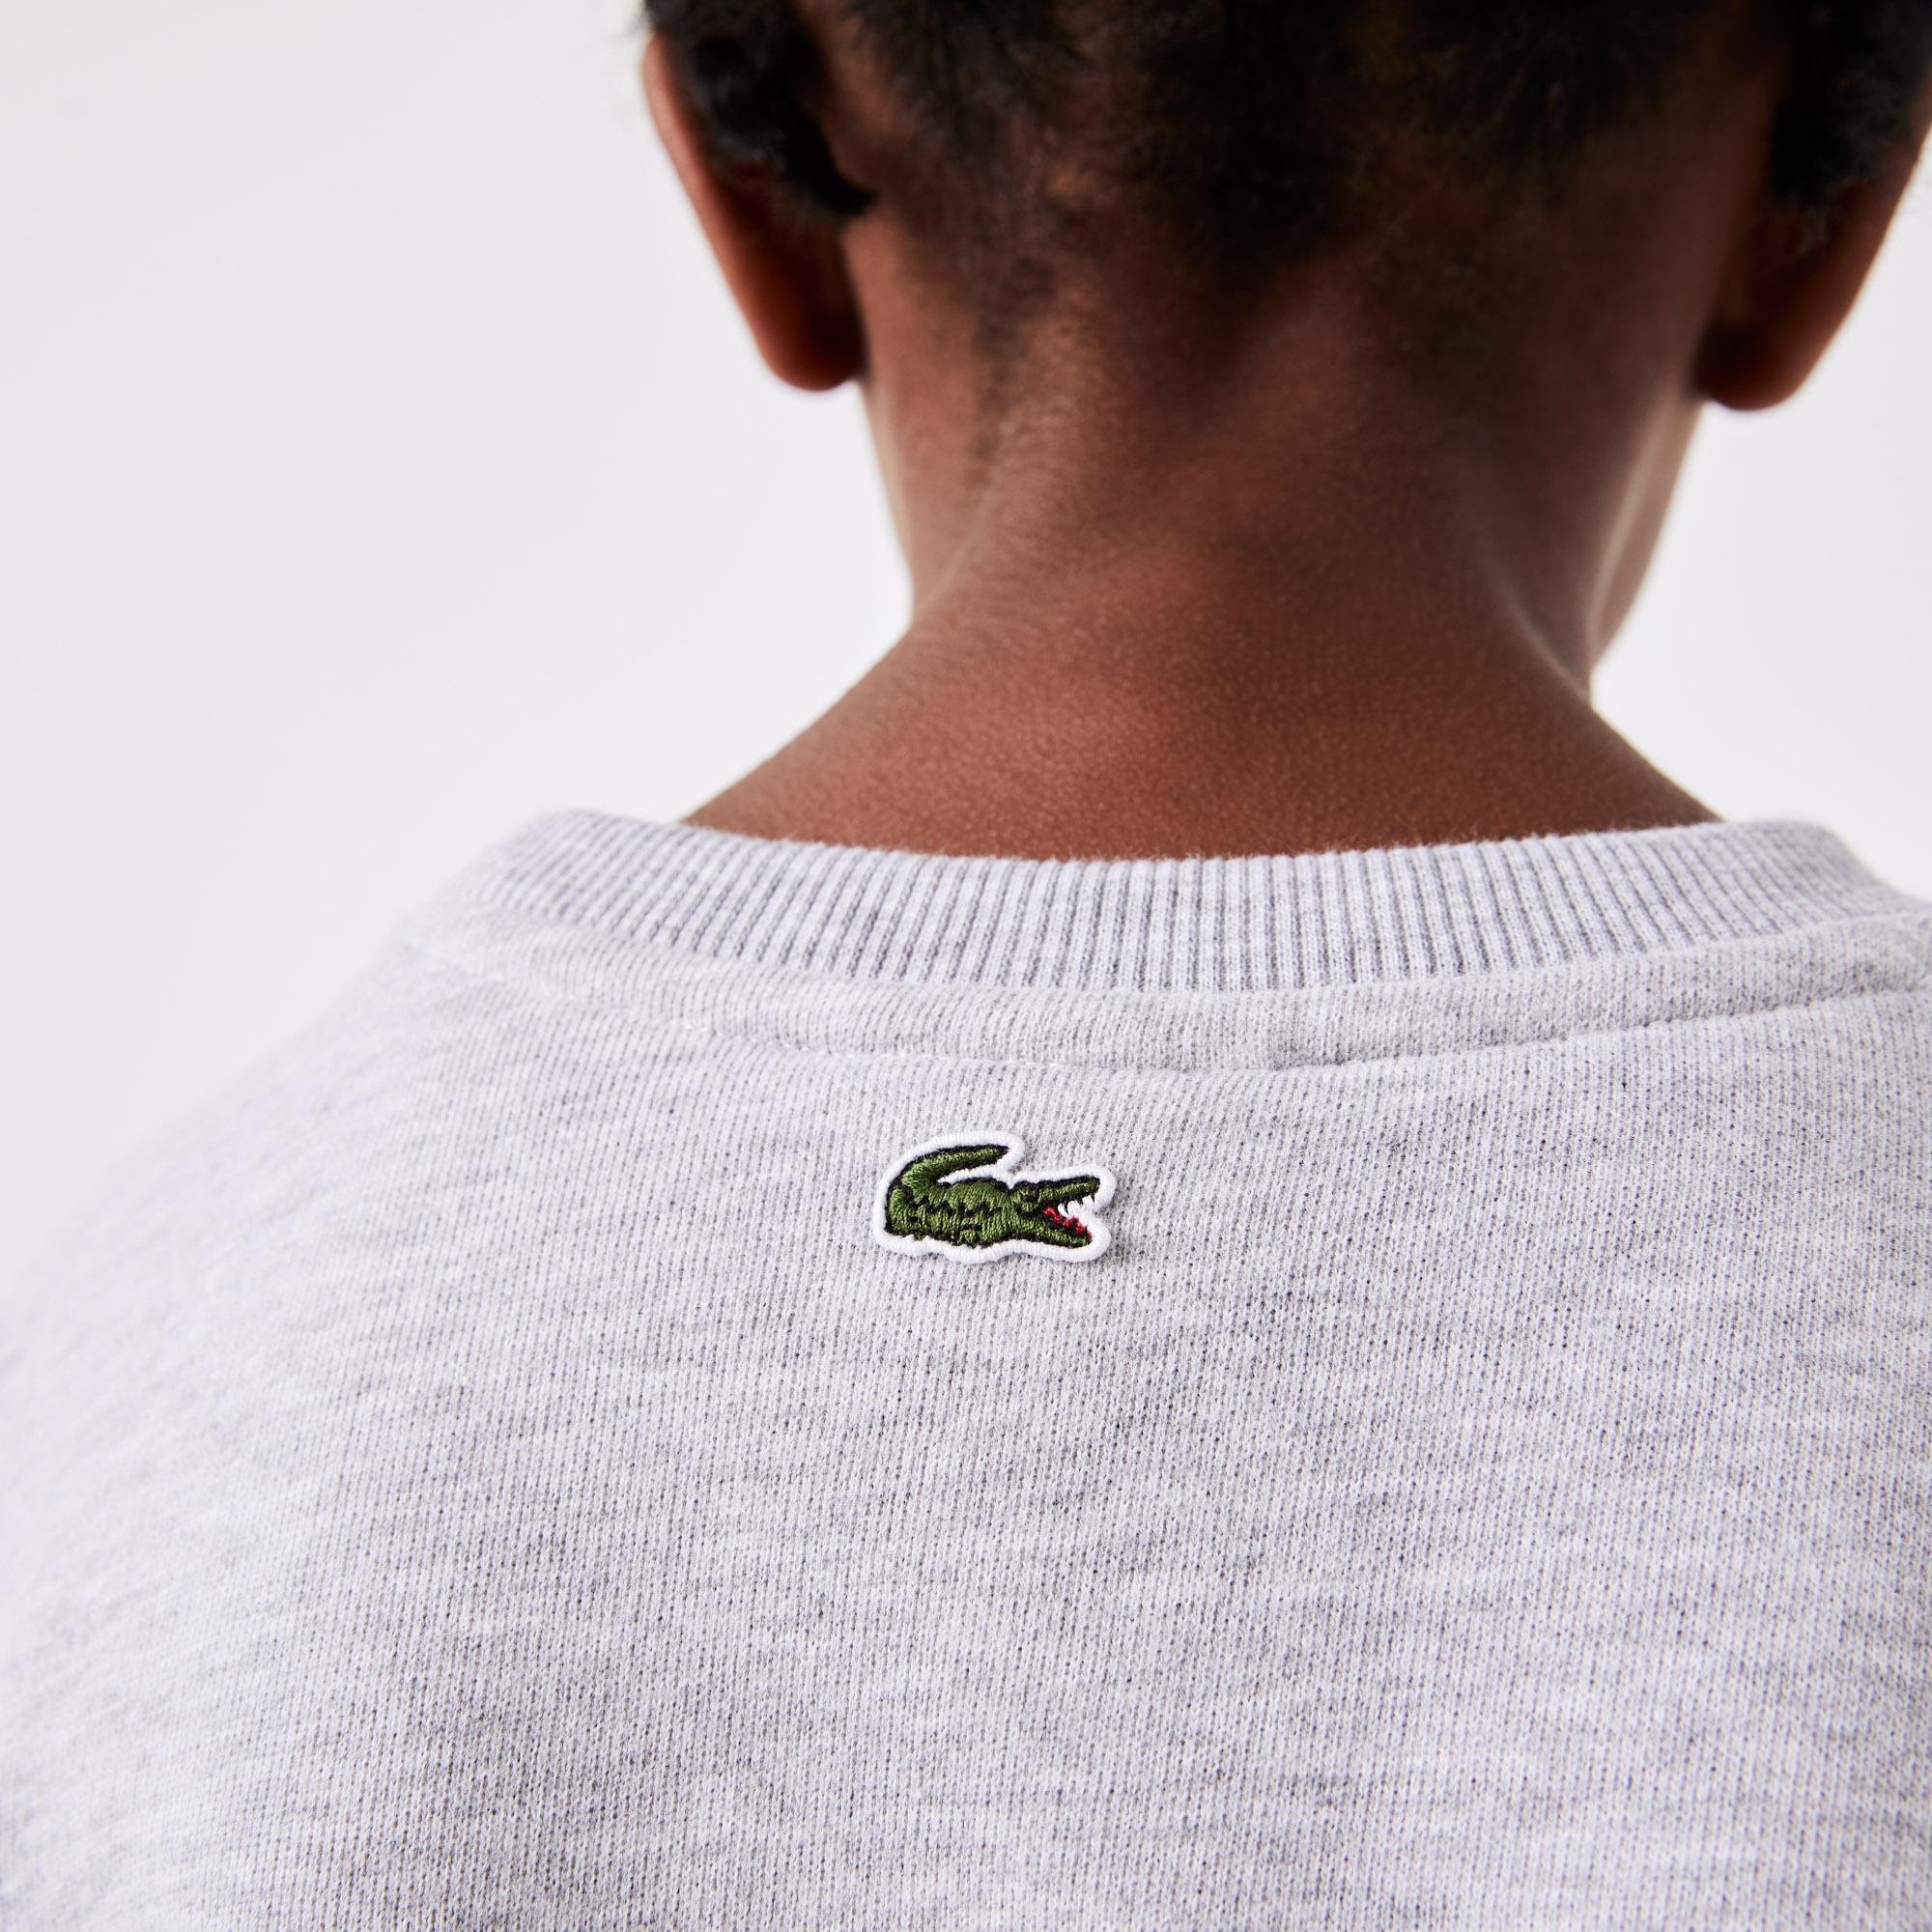 Lacoste dziecięca bluza z okrągłym dekoltem i nadrukiem z logo krokodyla